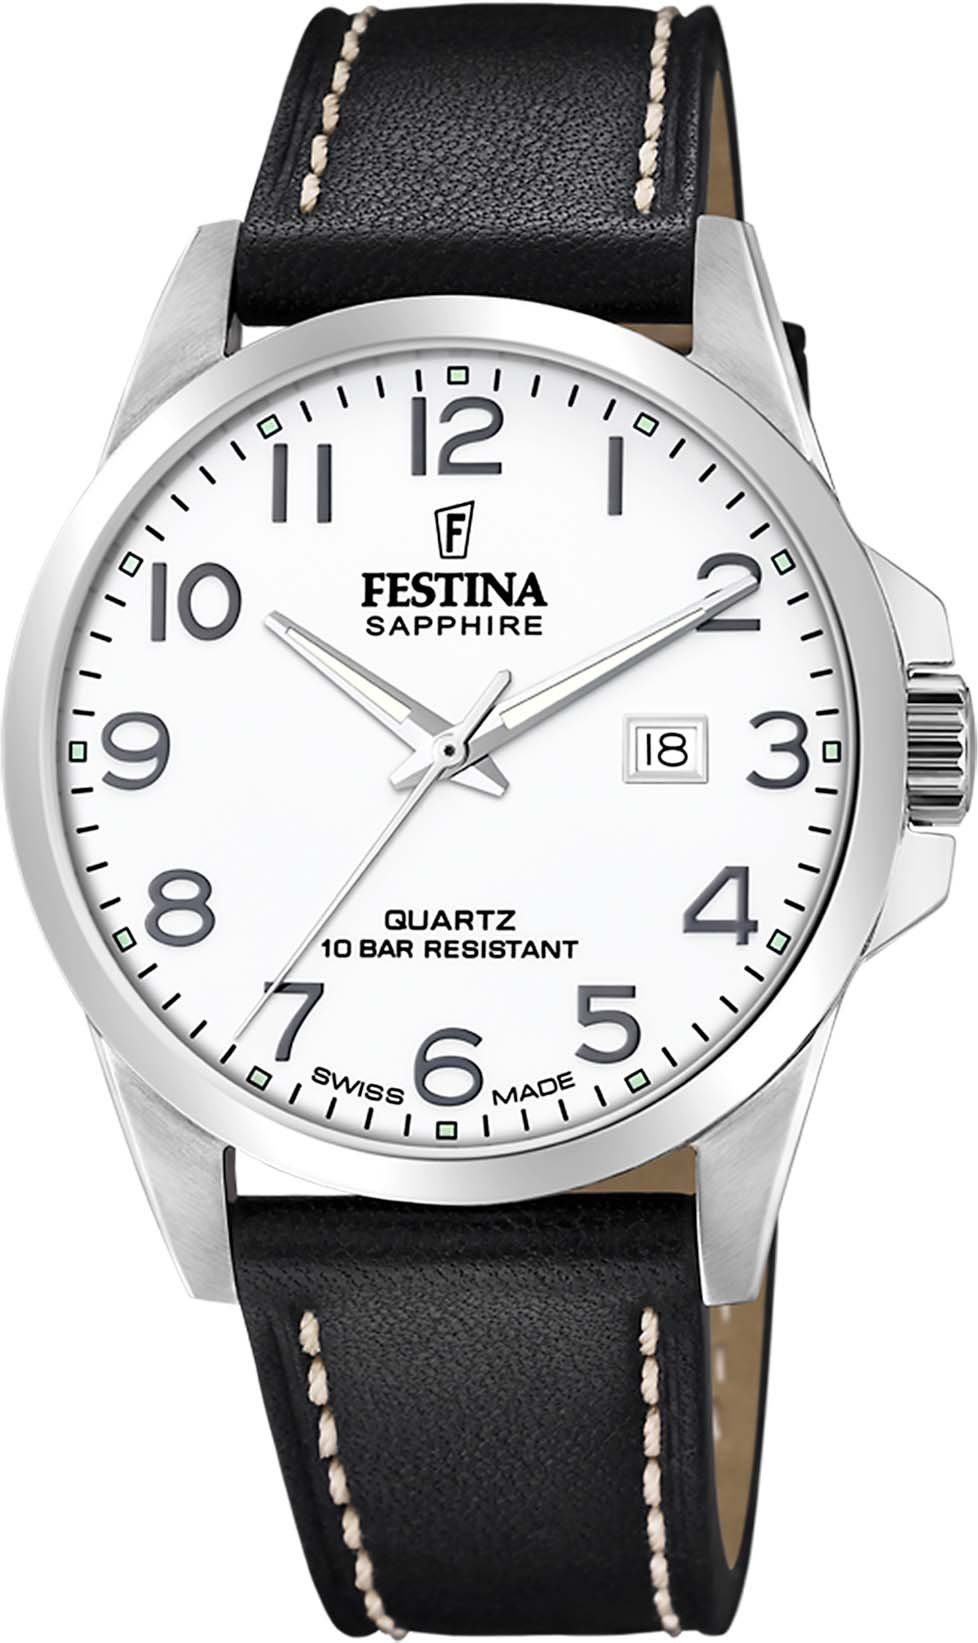 【Sonderangebot】 Festina Schweizer Uhr Swiss F20025/1 Made